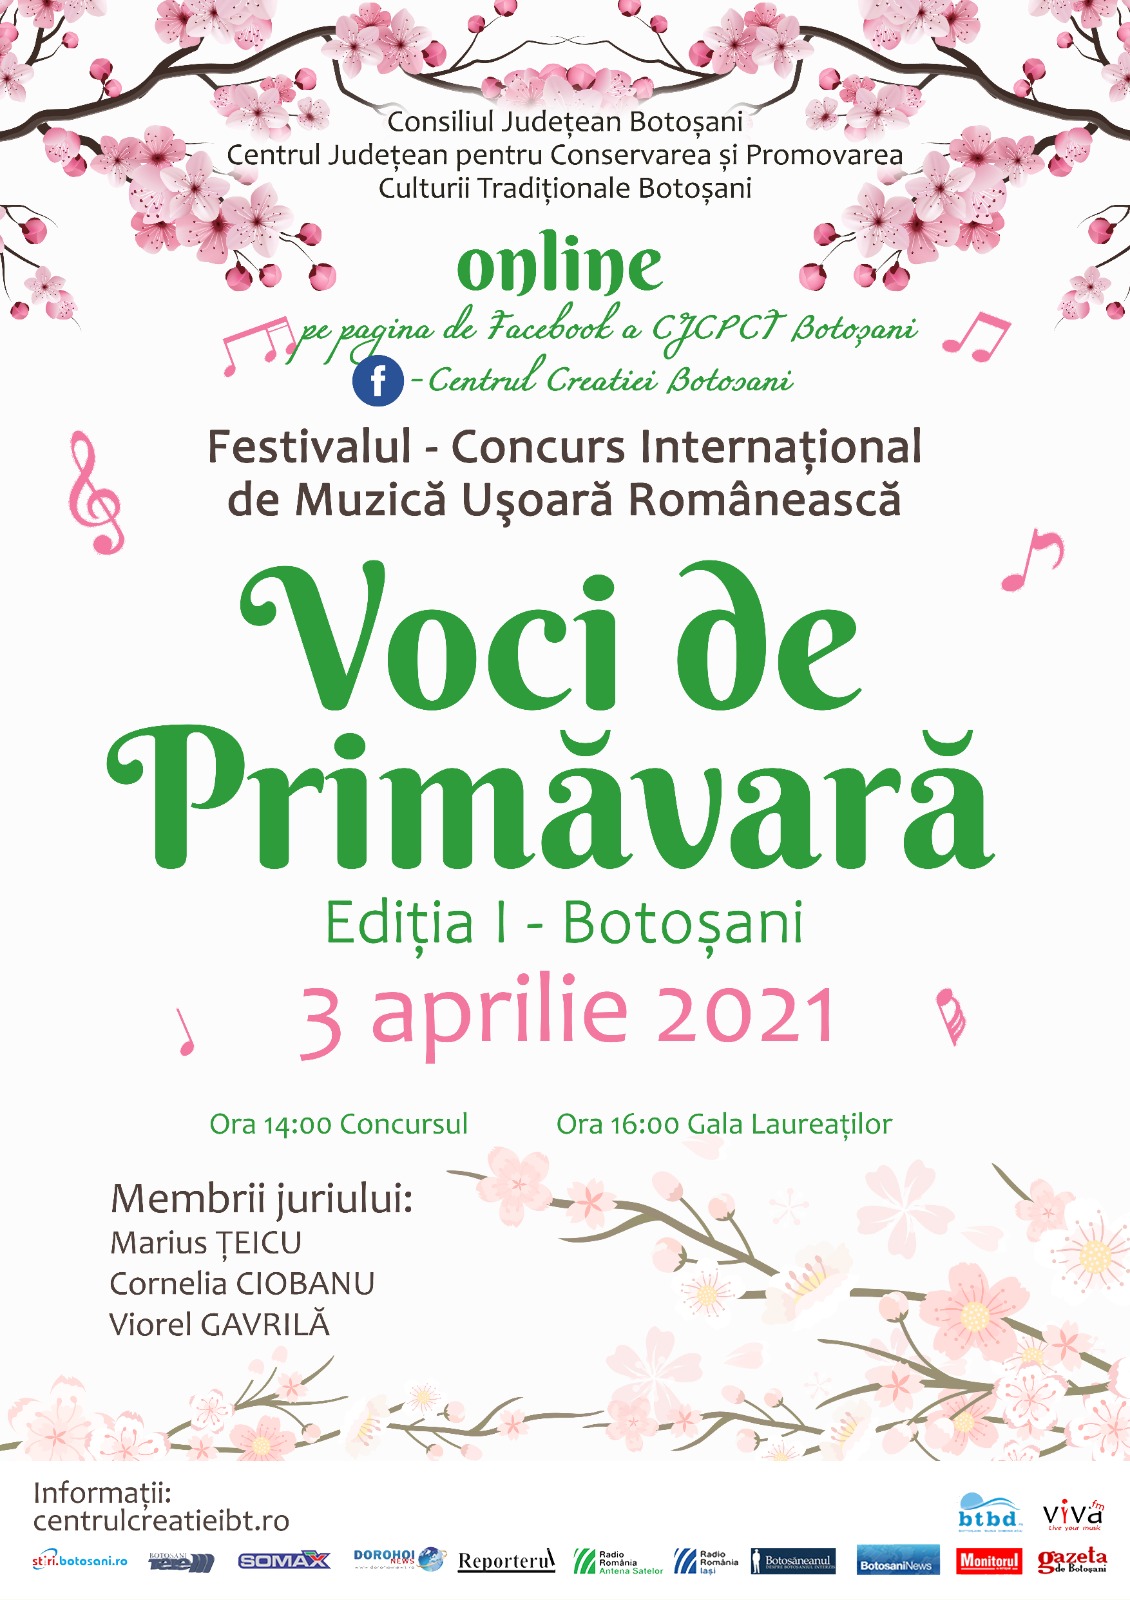 Festivalul – Concurs Internaţional de Muzică Uşoară Românească ,,Voci de Primăvară”, Ediţia I, Botoșani, 3 aprilie 2021